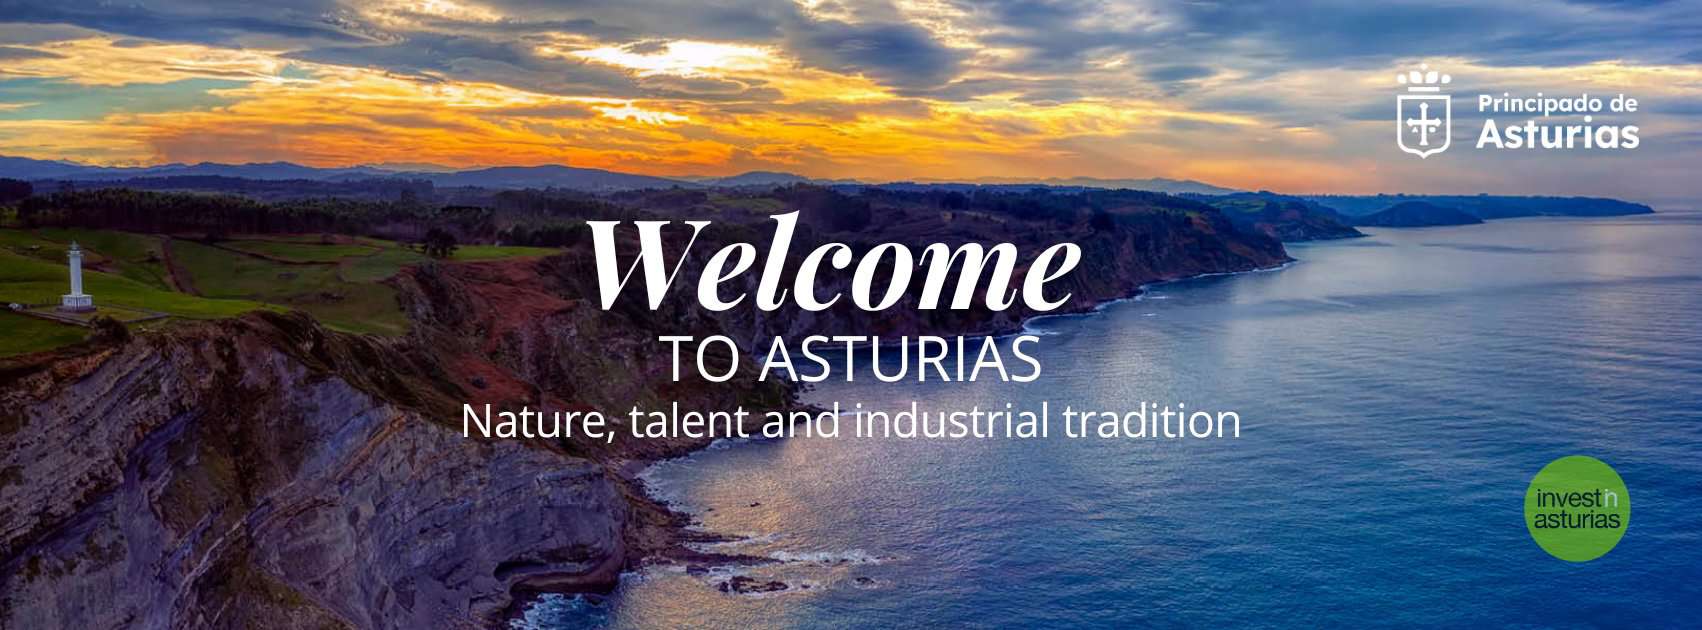 Invertir en Asturias - Invest in Asturias - Investieren in Asturien